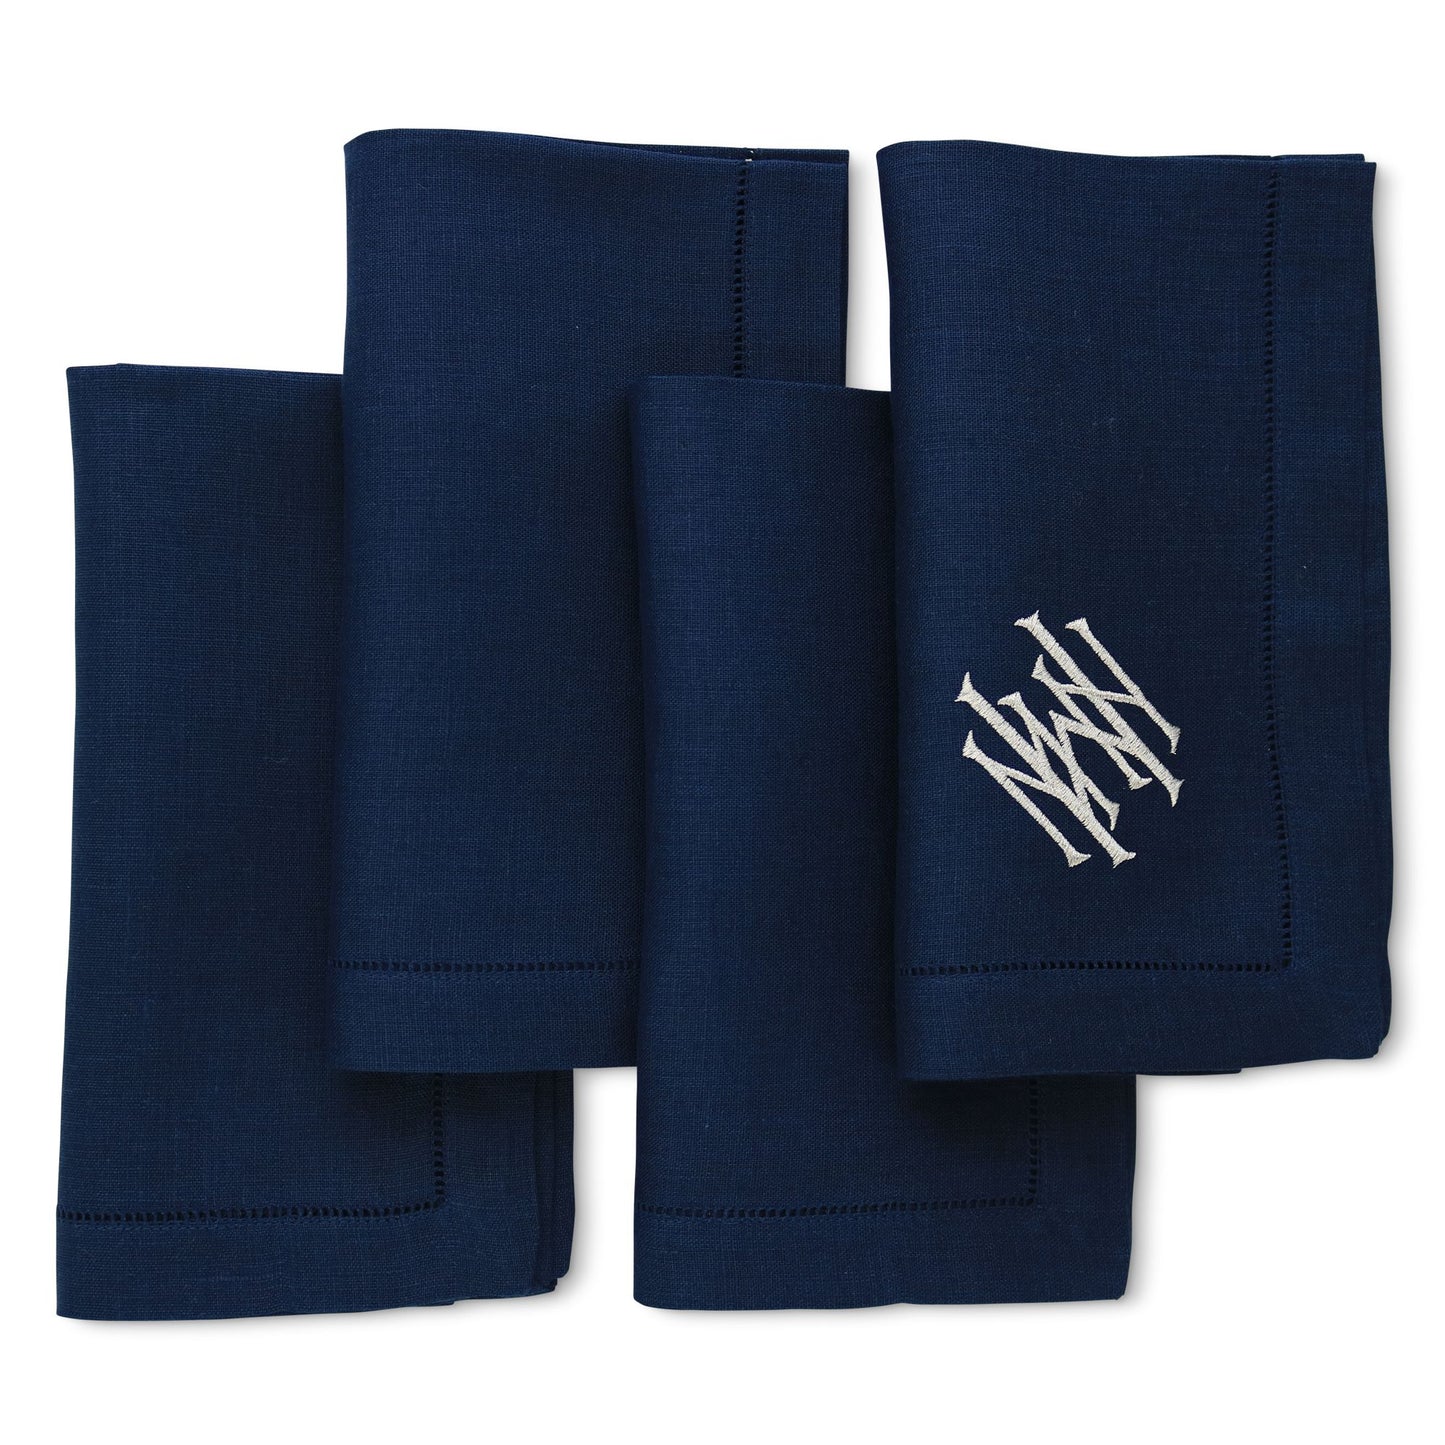 Serviettes de table en lin ajouré bleu marine (ensemble de 4)